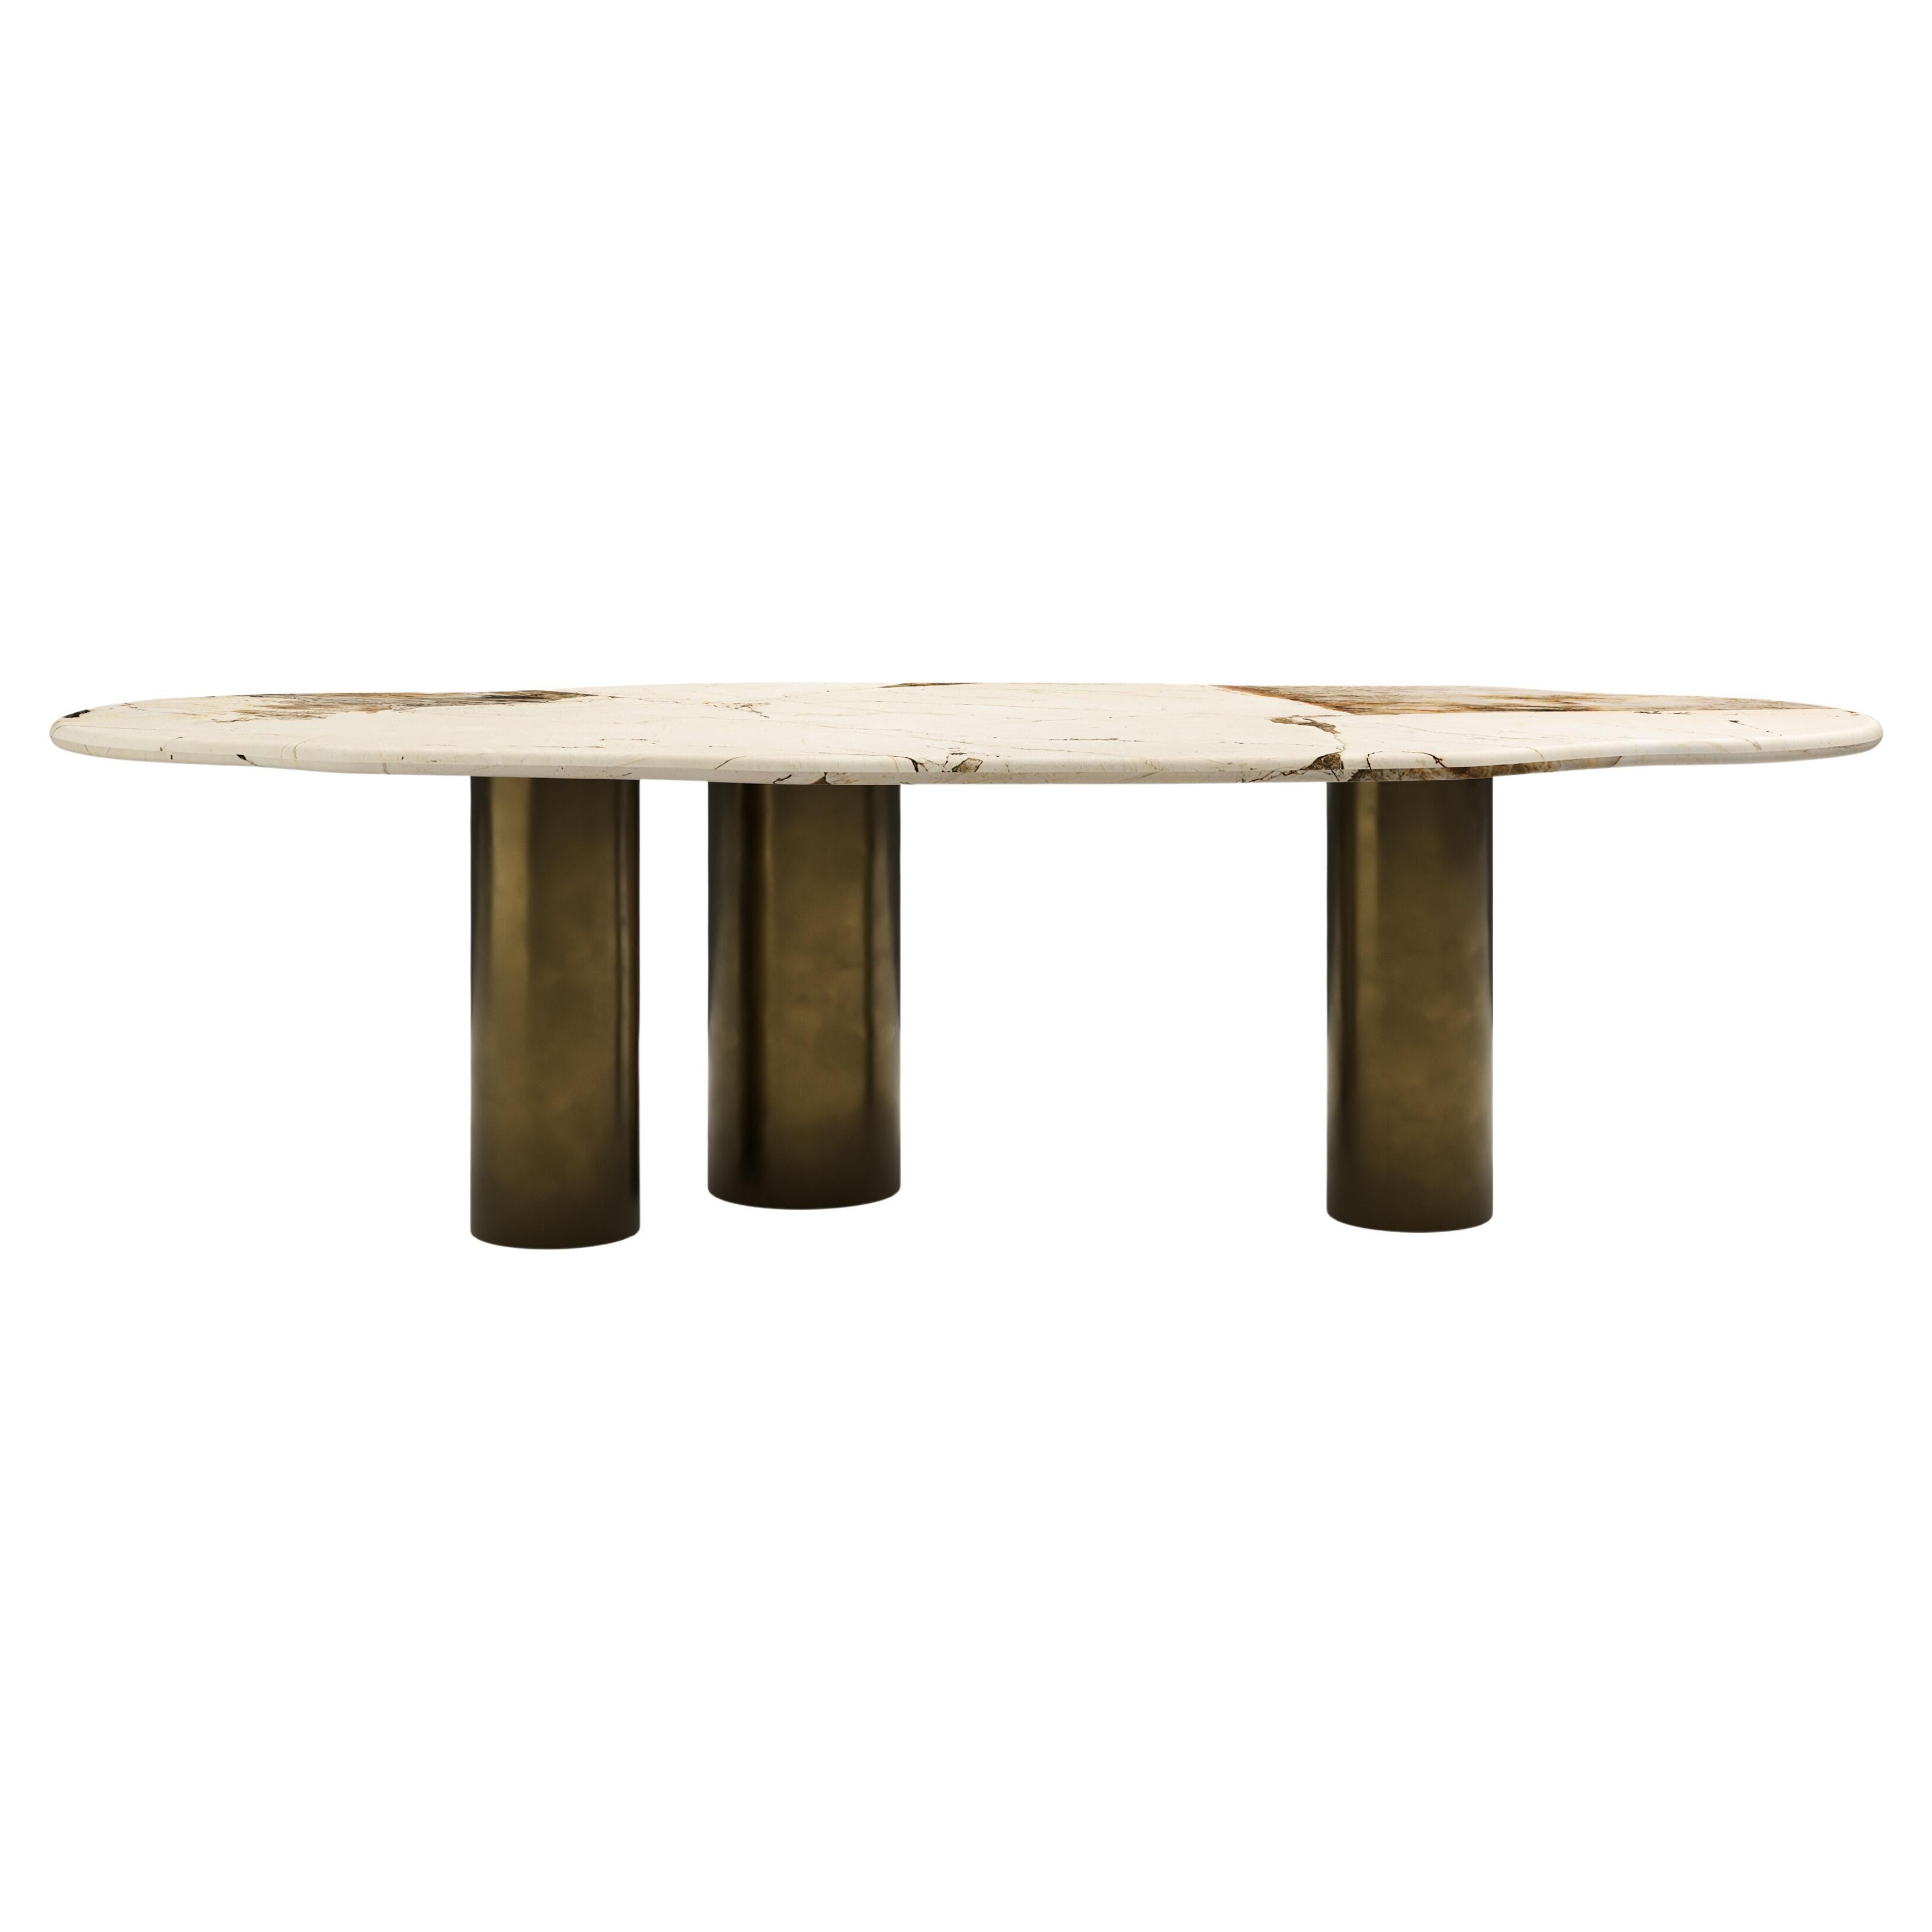 FORM(LA) table de salle à manger Lago de forme libre 118 L x 48 W x 30 H Quartzite et bronze